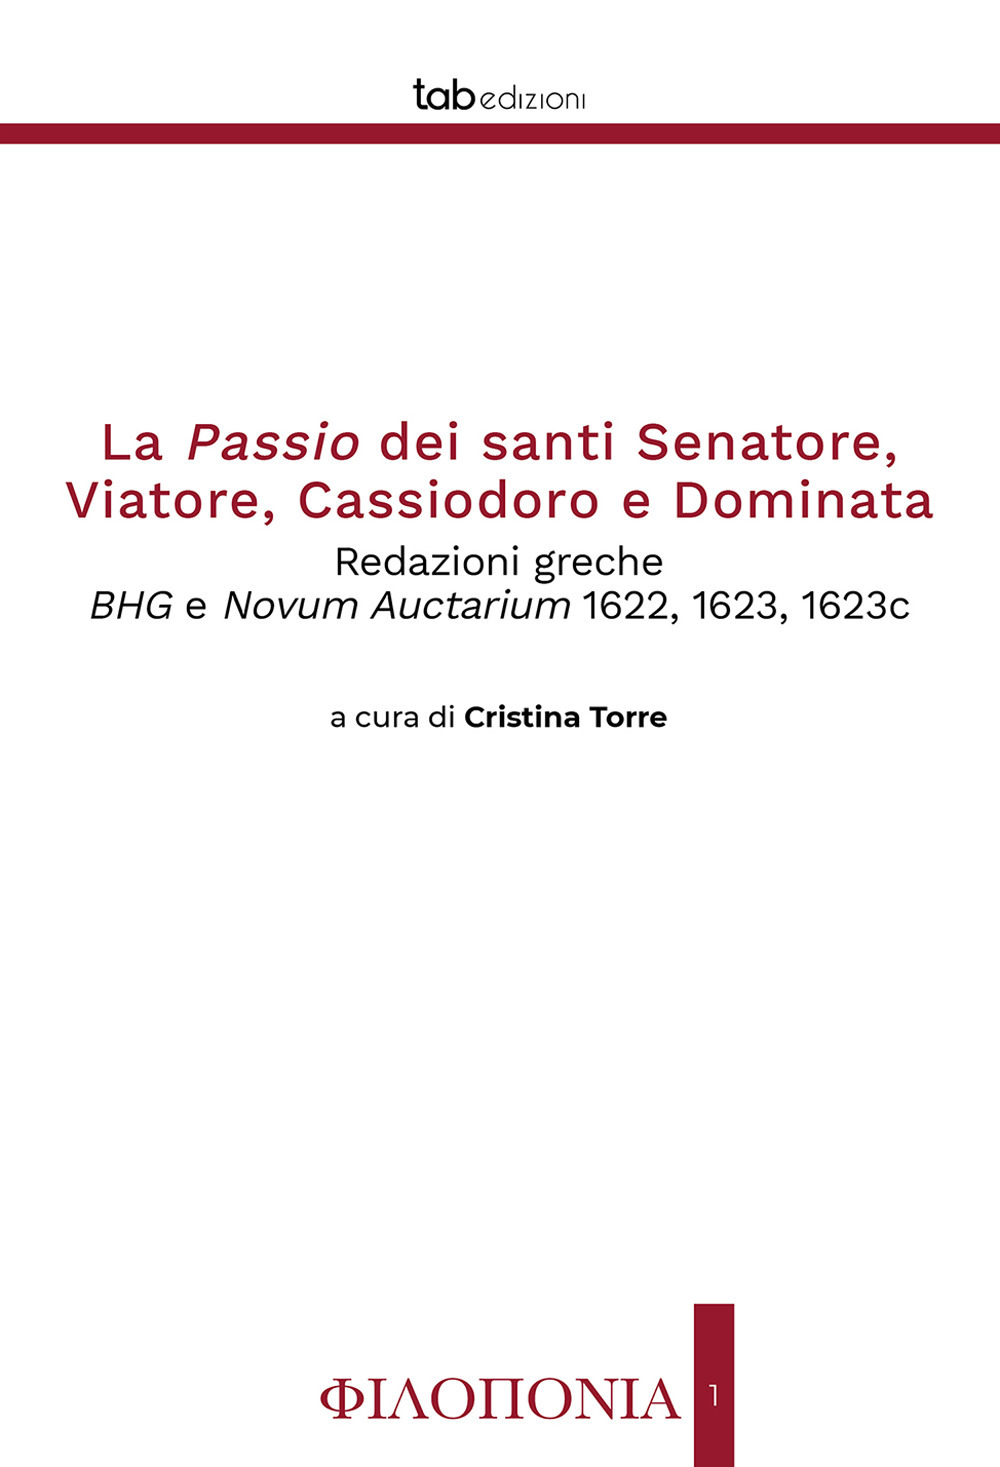 La passio dei santi Senatore, Viatore, Cassiodoro e Dominata. Redazioni greche BHG e Novum Auctarium 1622, 1623, 1623c